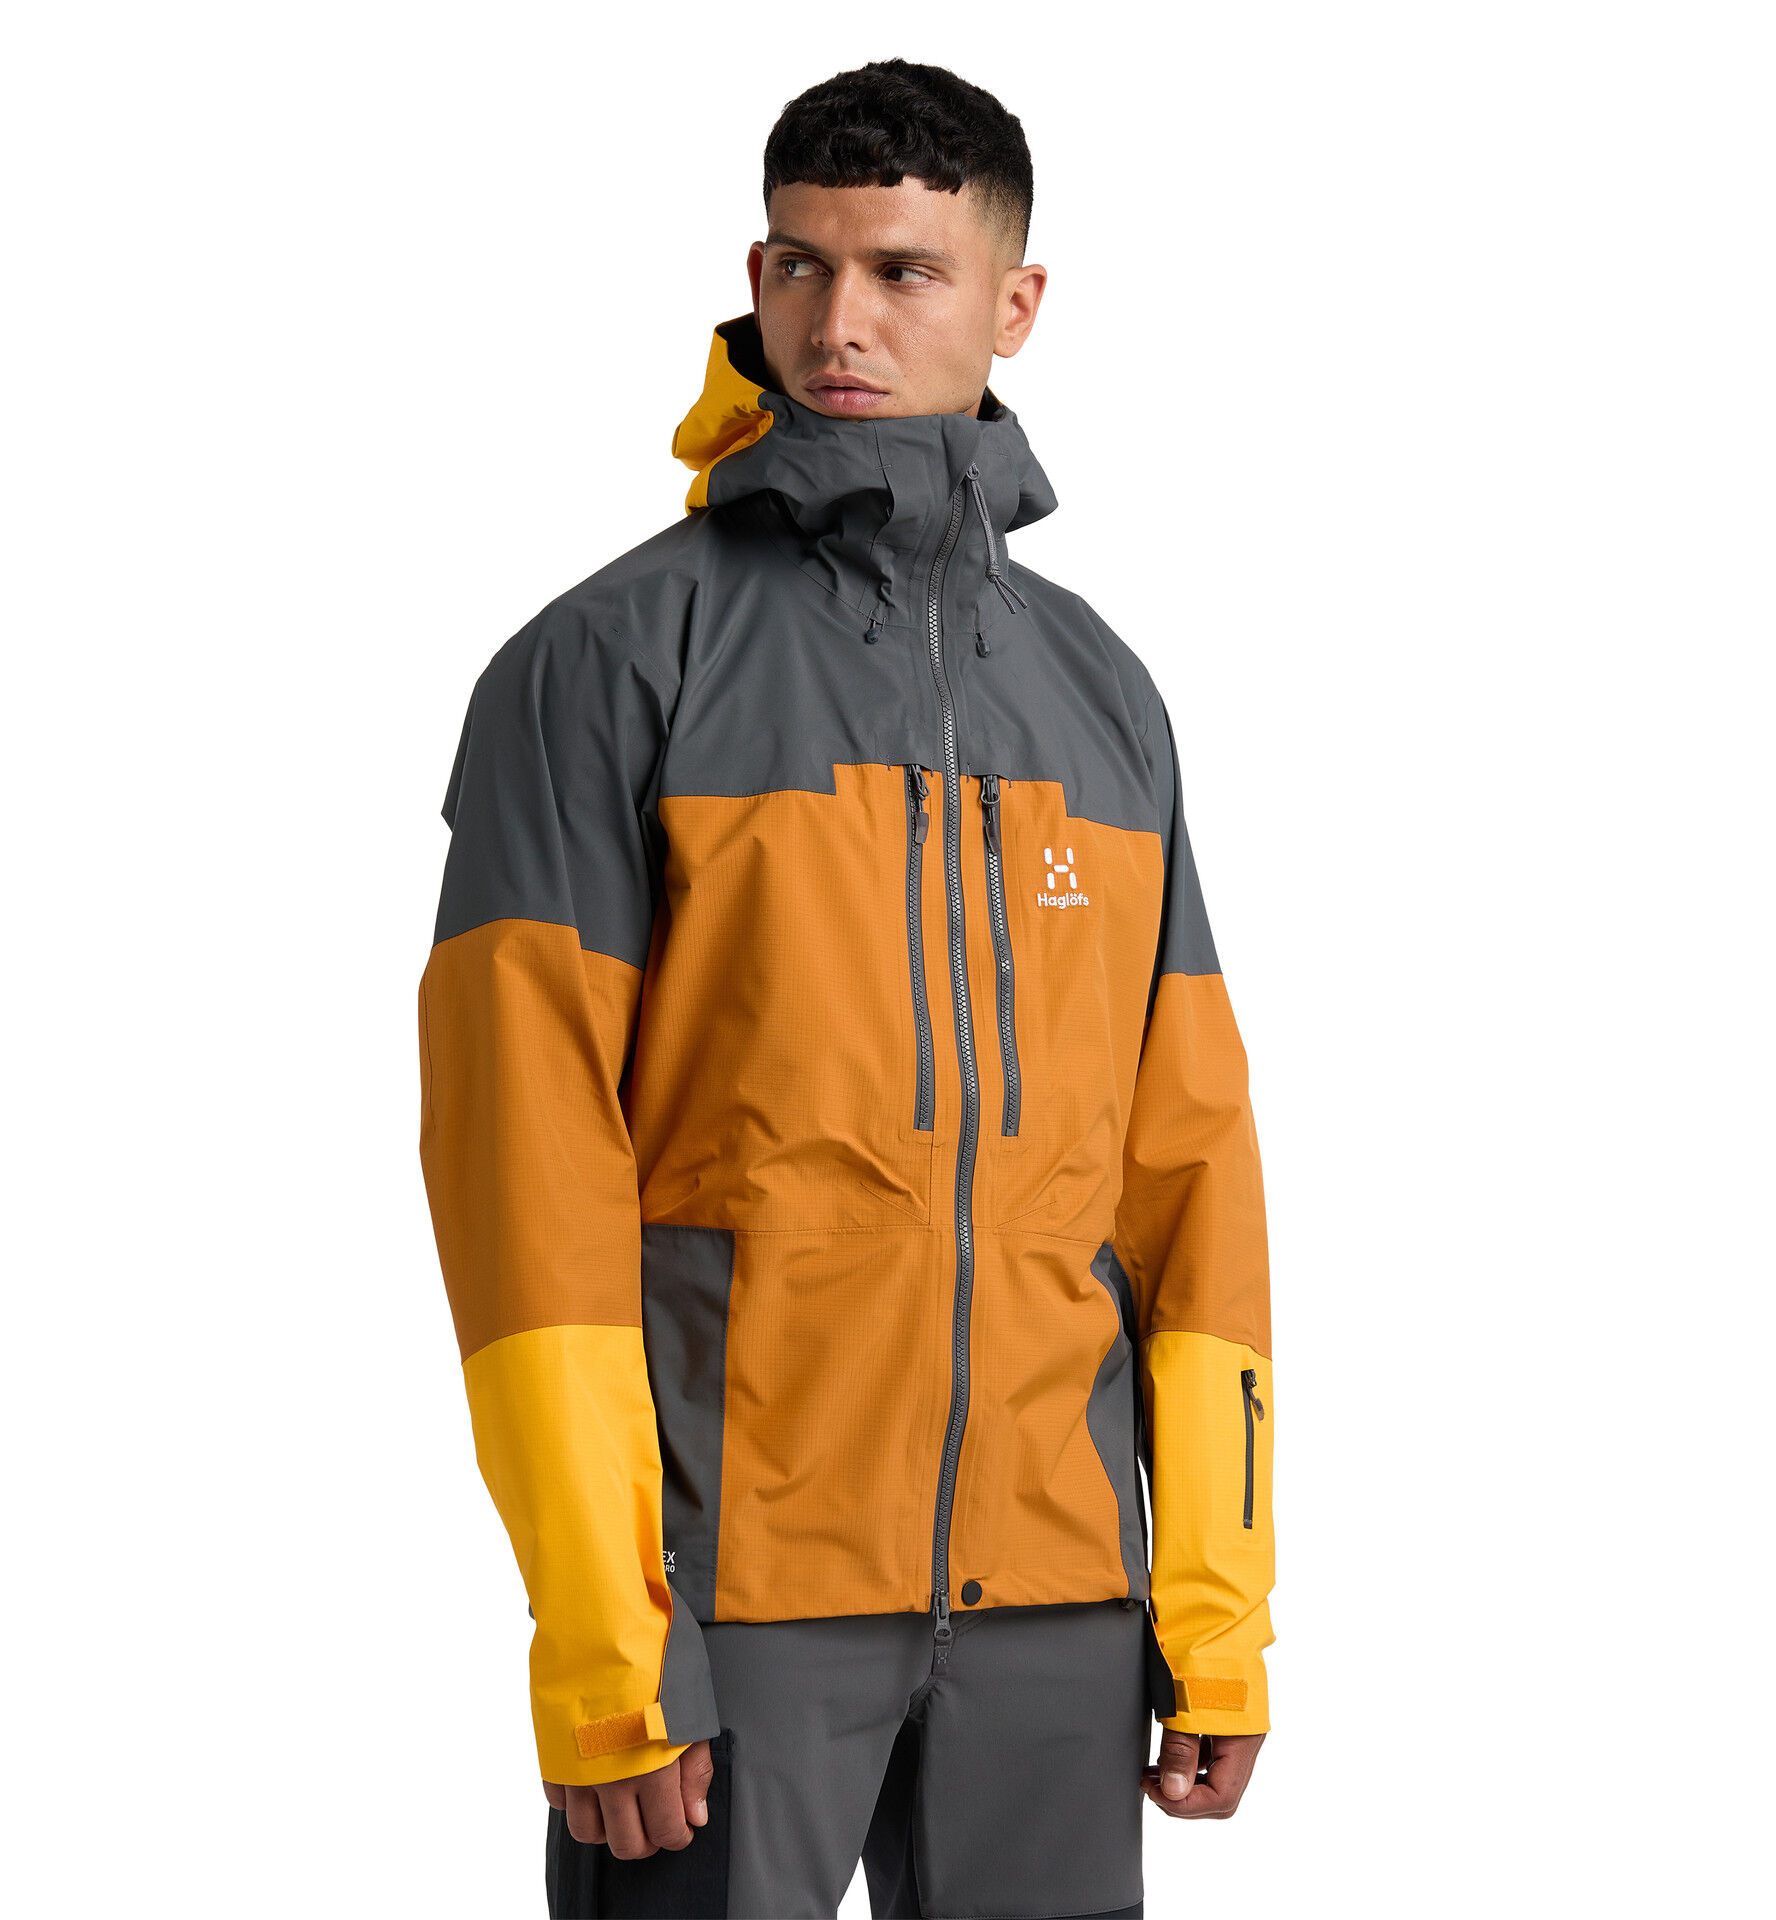 Haglöfs Spitz GTX PRO Jacket - Waterproof jacket - Men's